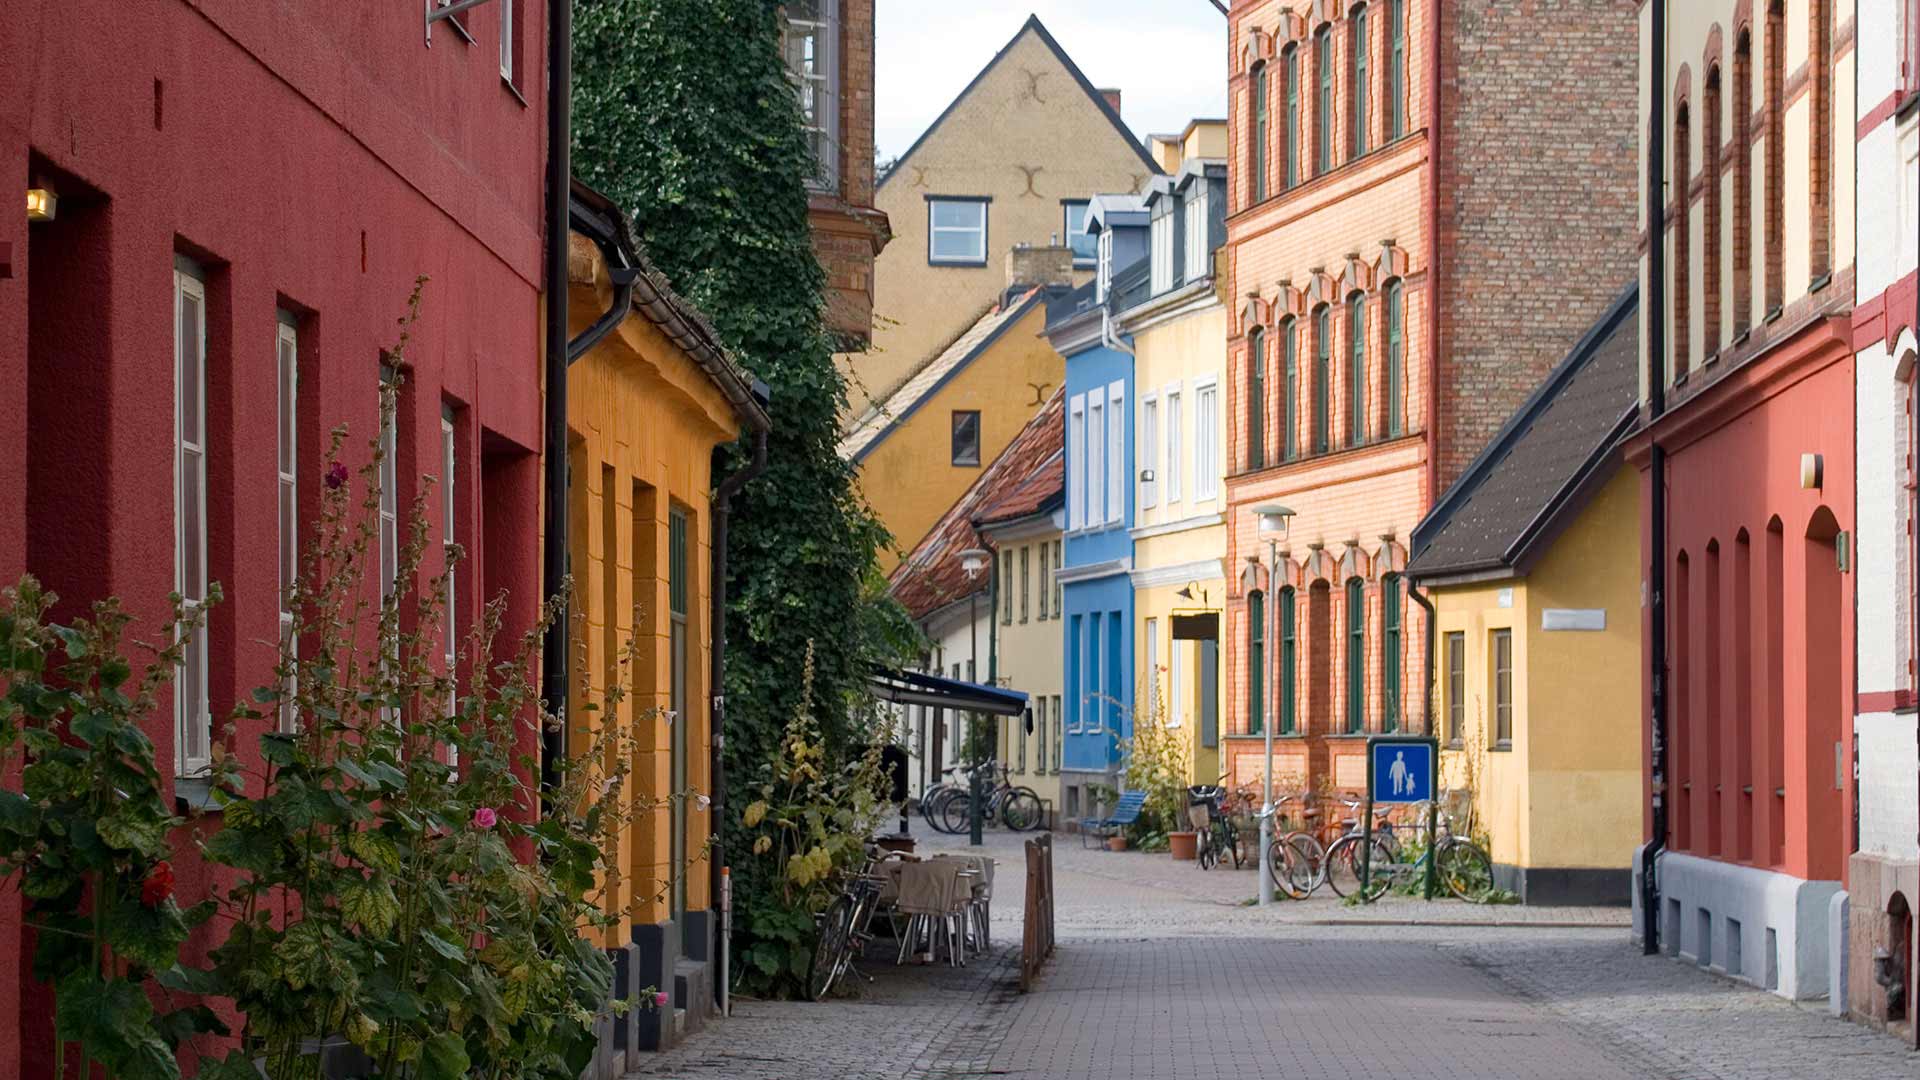 Malmo, Sweden